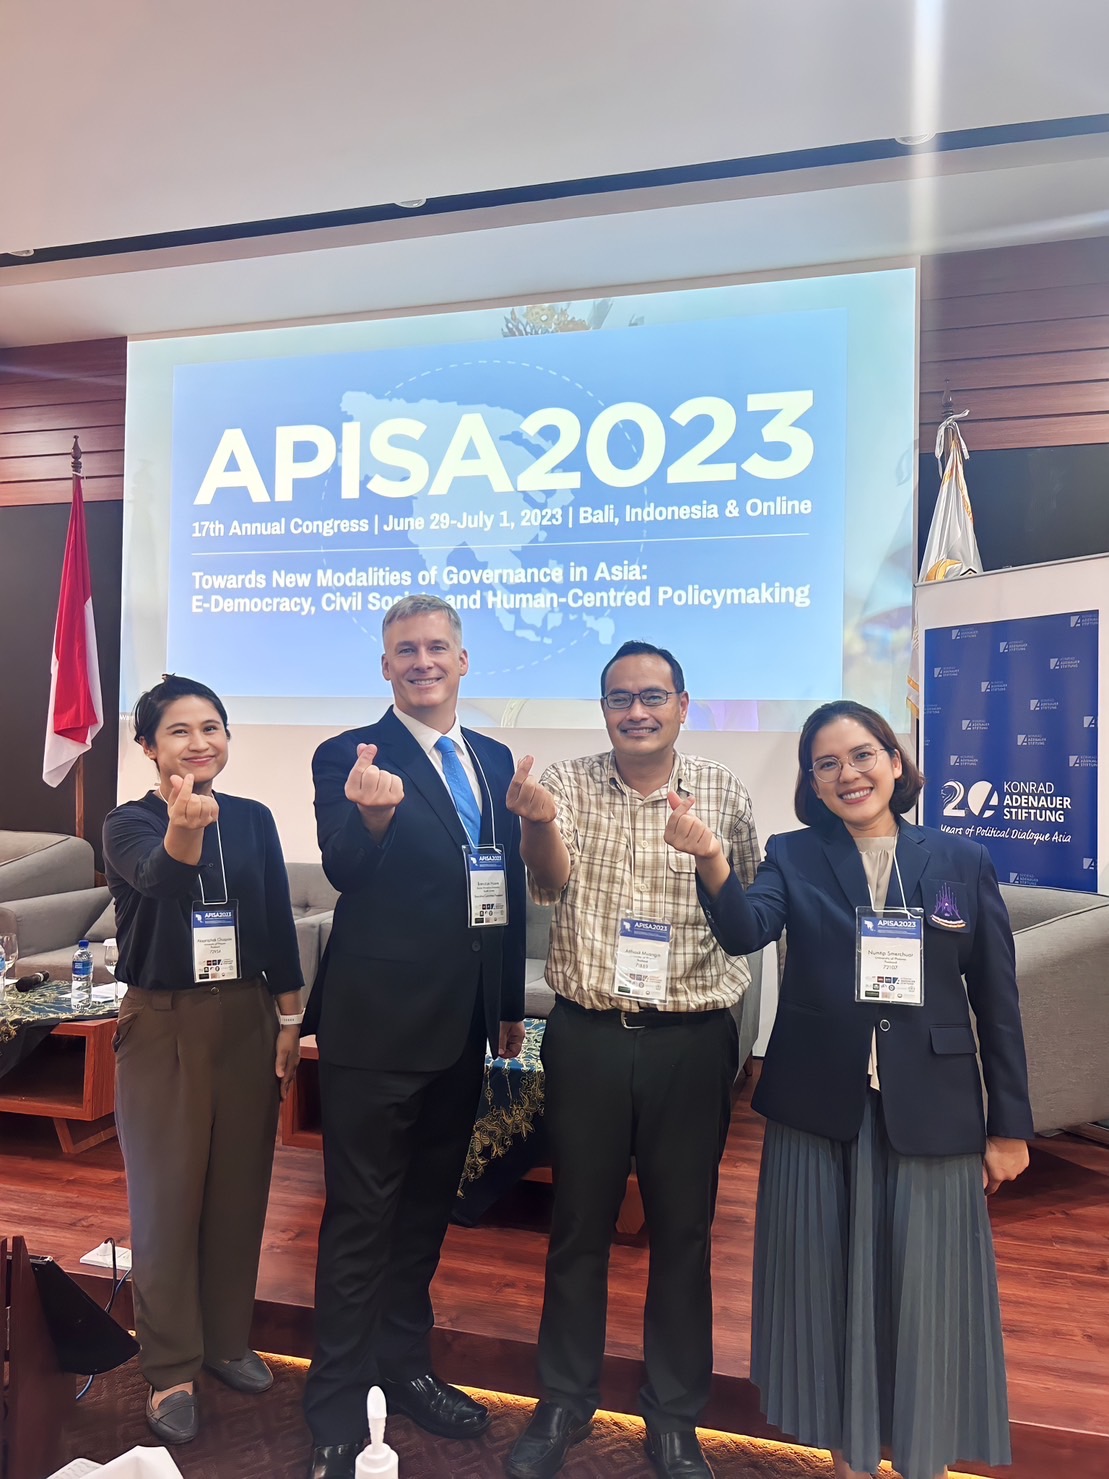 การประชุมวิชาการระดับนานาชาติ The Asian Political and International Studies Association (APISA) : APISA2023